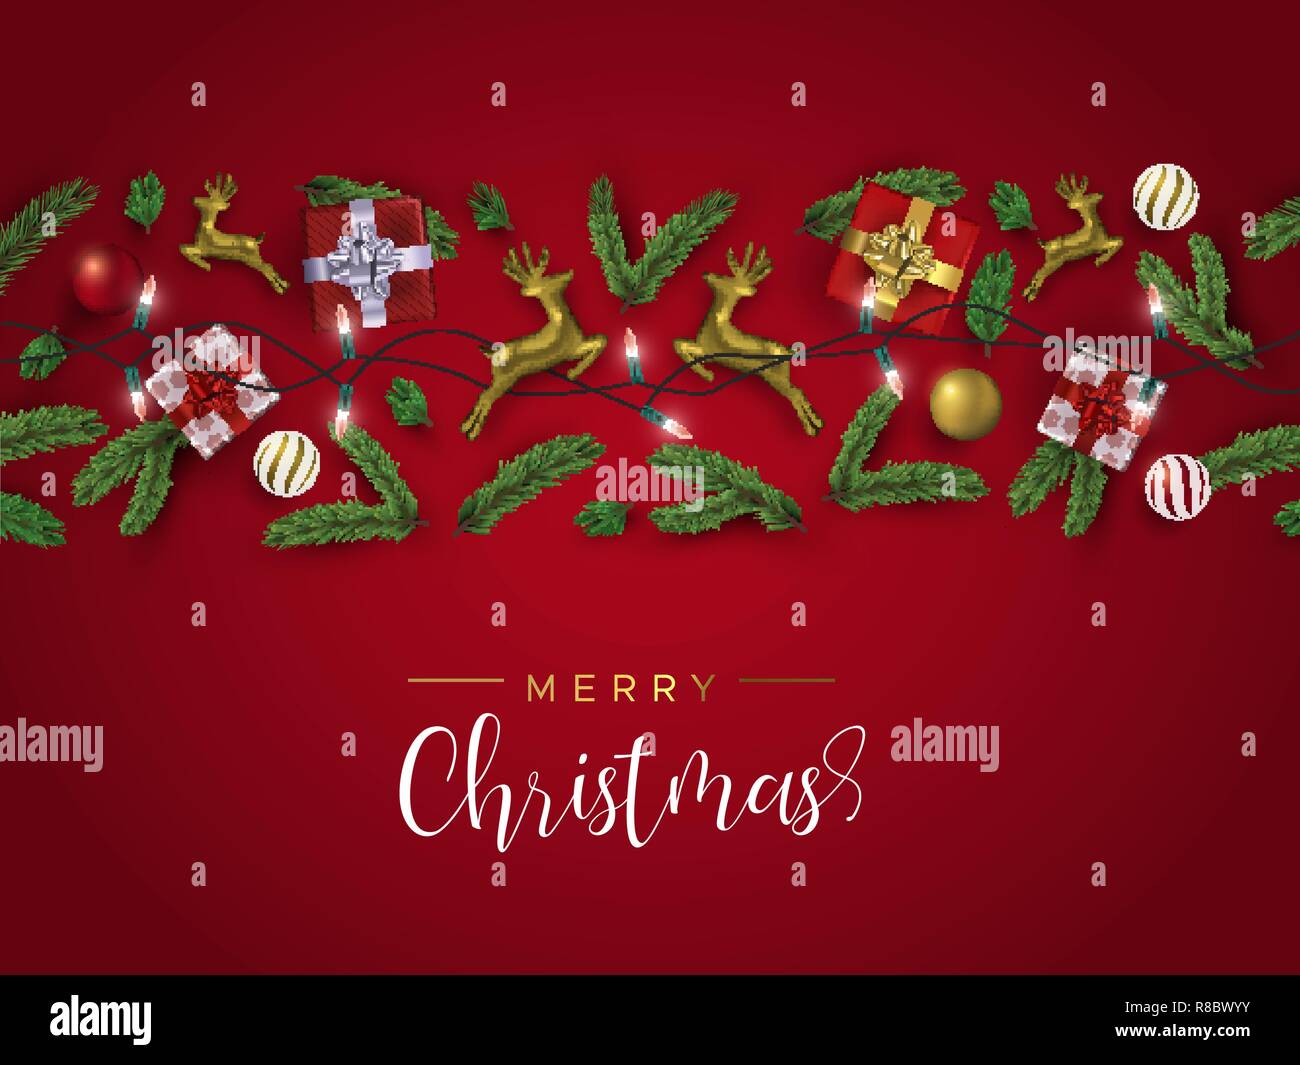 Weihnachtskarte: Realistische gold Geschenkbox Elemente, Rentier, Weihnachten Ornamente und Pine Tree Blatt auf roten Hintergrund. Winterurlaub layout Lllustrat Stock Vektor